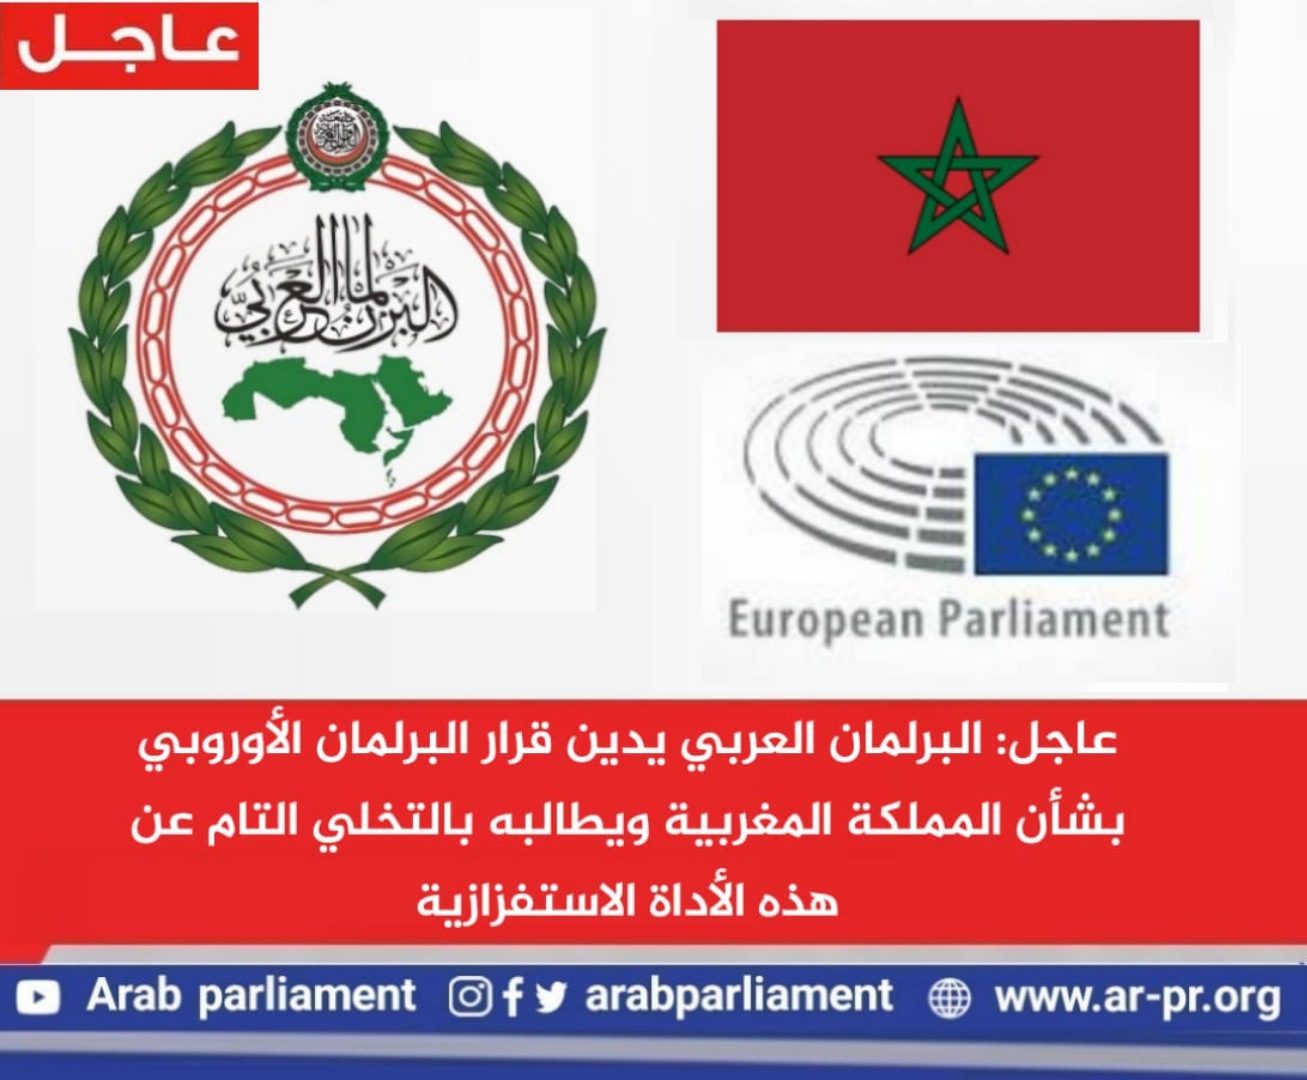 عاجل البرلمان العربي يدين قرار البرلمان الأوروبي بشأن المملكة المغربية، ويطالبه بالتخلي التام عن هذه الأداة الاستفزازية